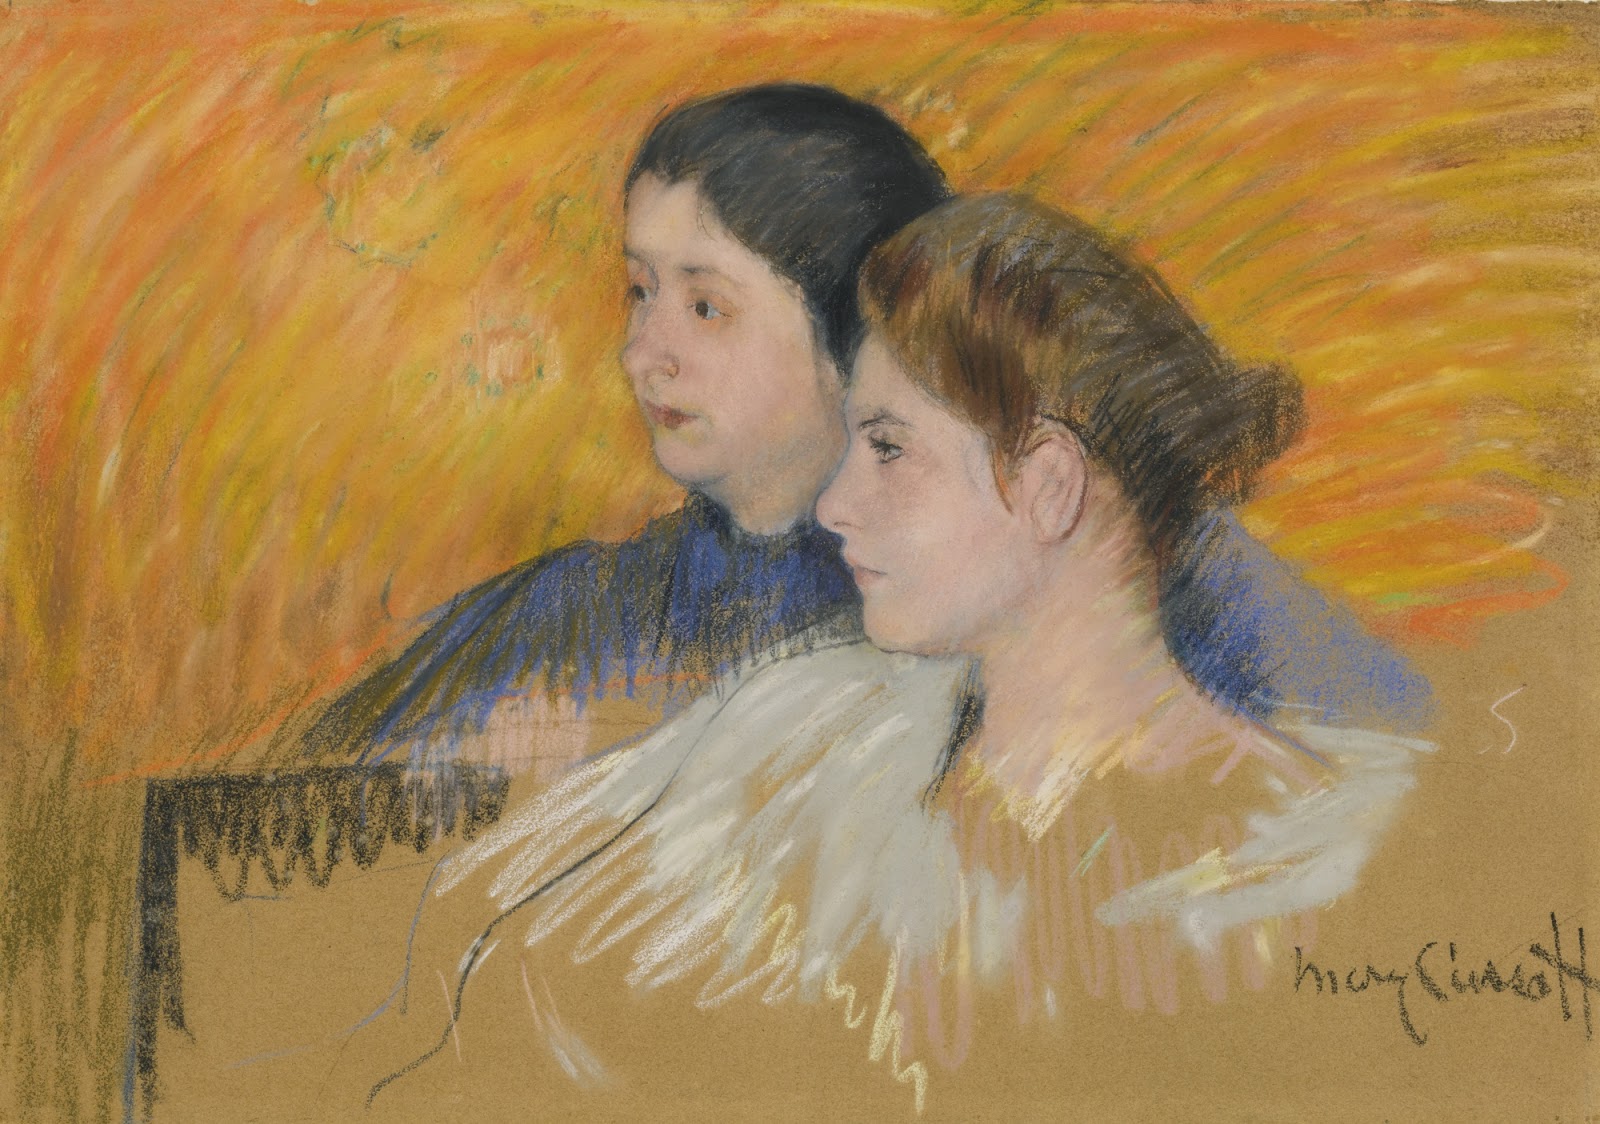 Mary+Cassatt-1844-1926 (226).jpg